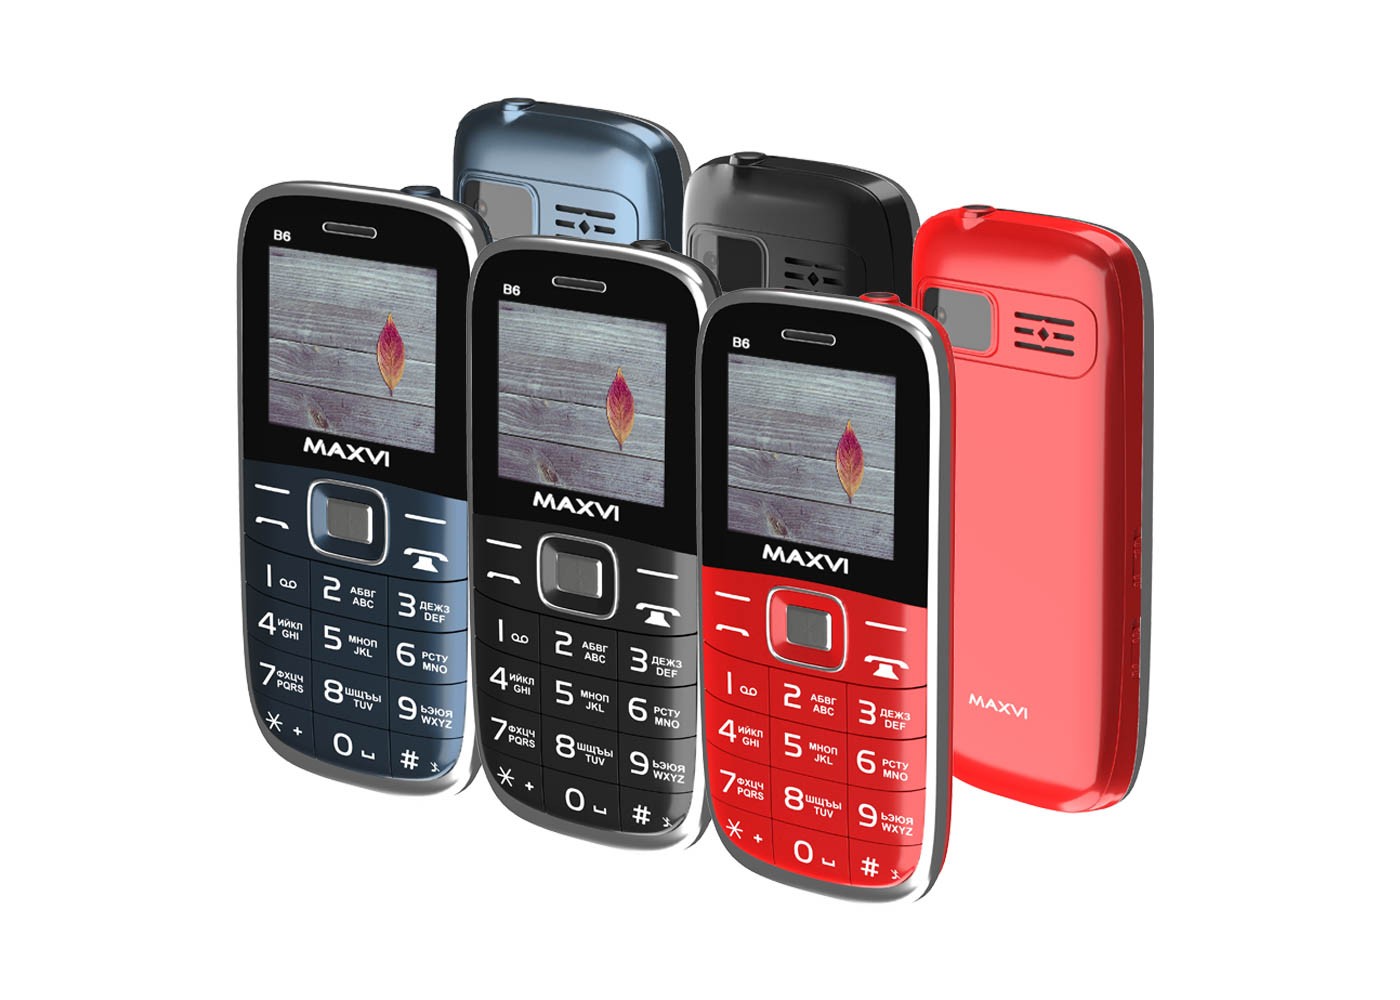 Уфа телефоны кнопочные. Сотовый телефон Maxvi b6 Red. Сотовый телефон Maxvi b6 Black. Сотовый телефон Maxvi b6 красный. Мобильный телефон Maxvi b6 Marengo.